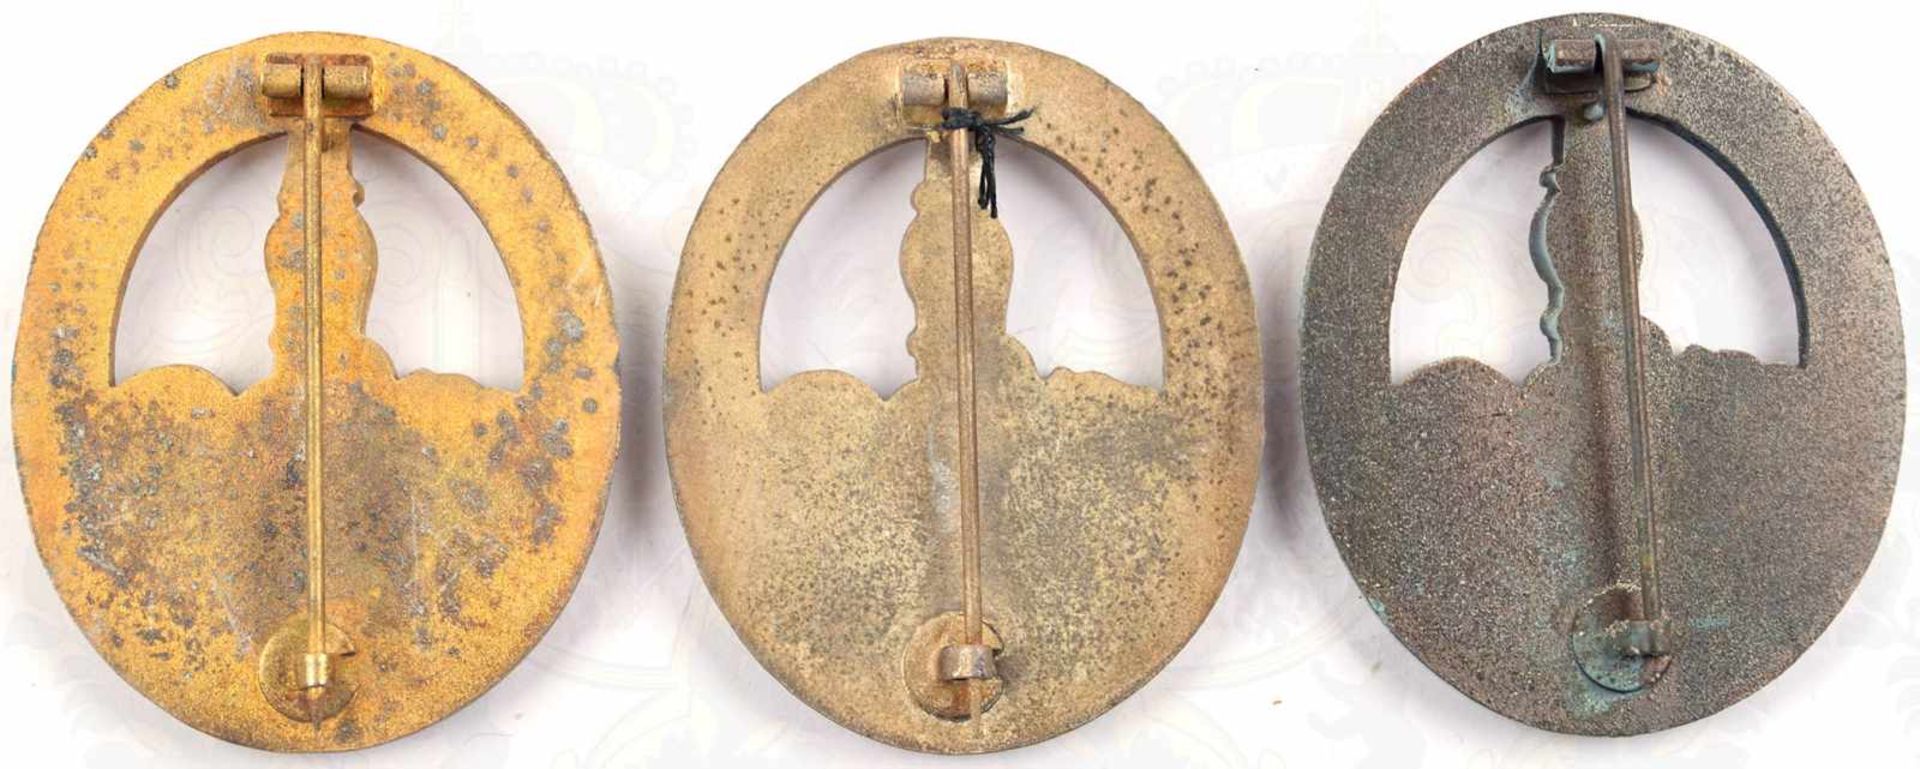 SATZ 3 BANDENKAMPFABZEICHEN, in Gold, Silber u. Bronze, qualitätvolle ältere Fertigungen v. Souval - Bild 2 aus 2